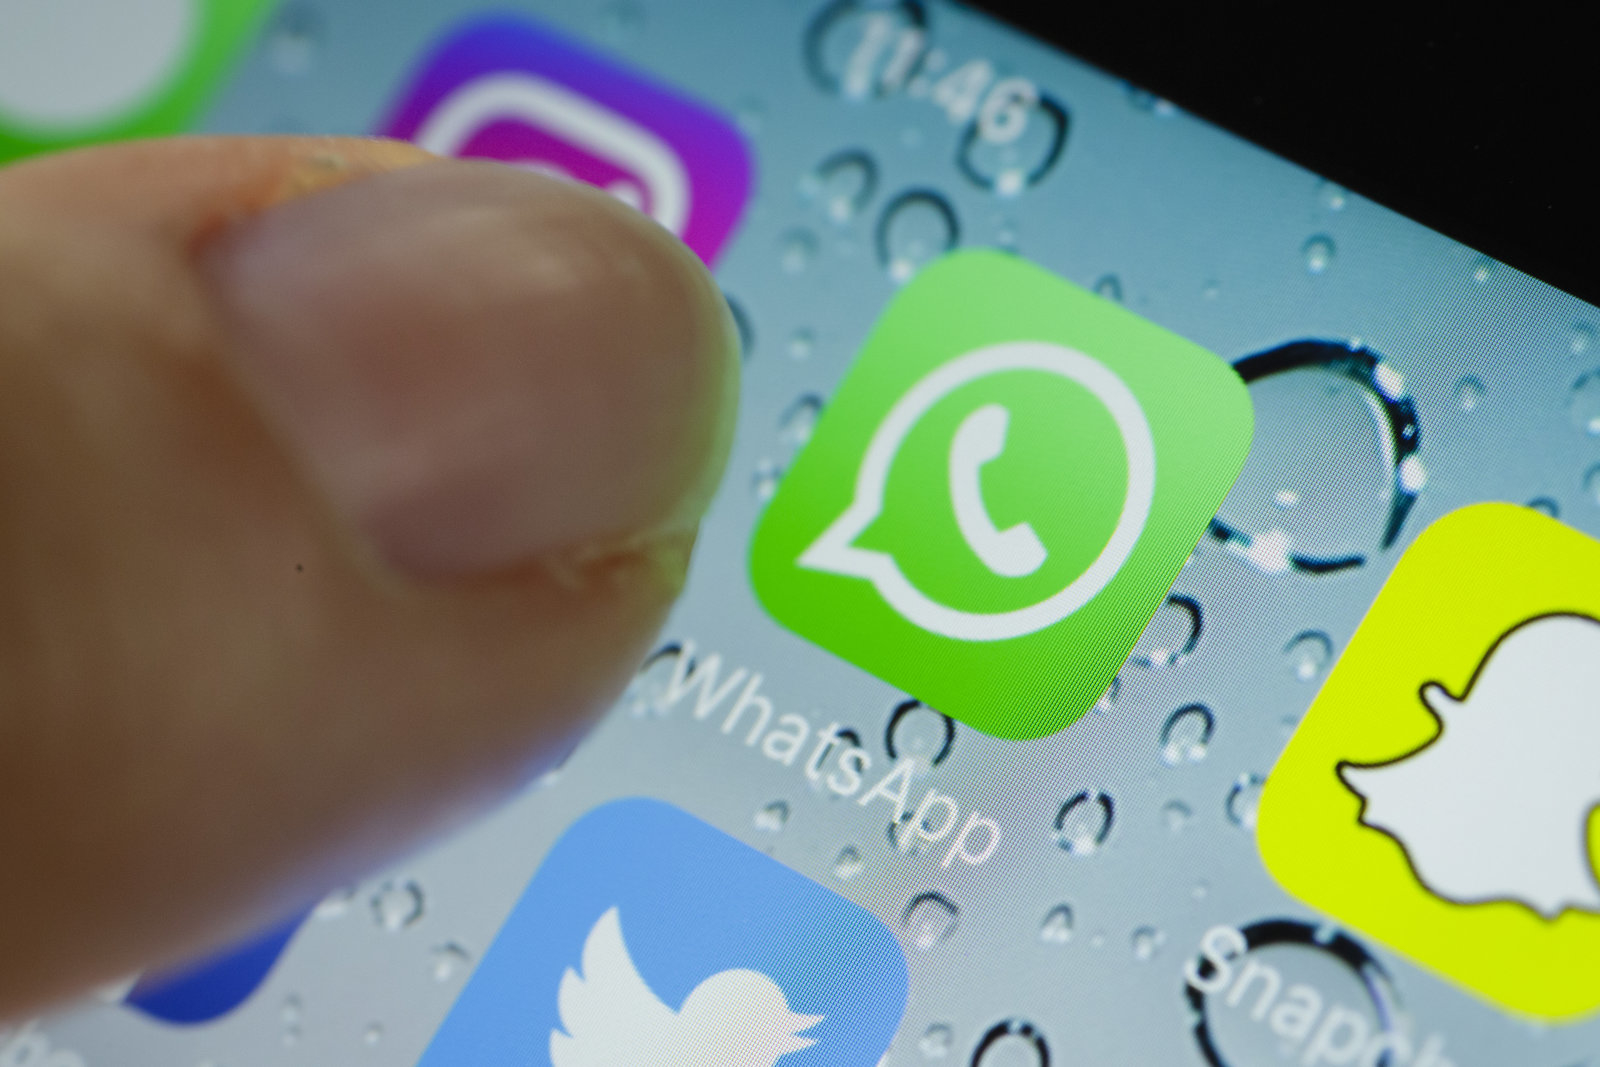 Siri ya puede leerte los mensajes de WhatsApp recibidos